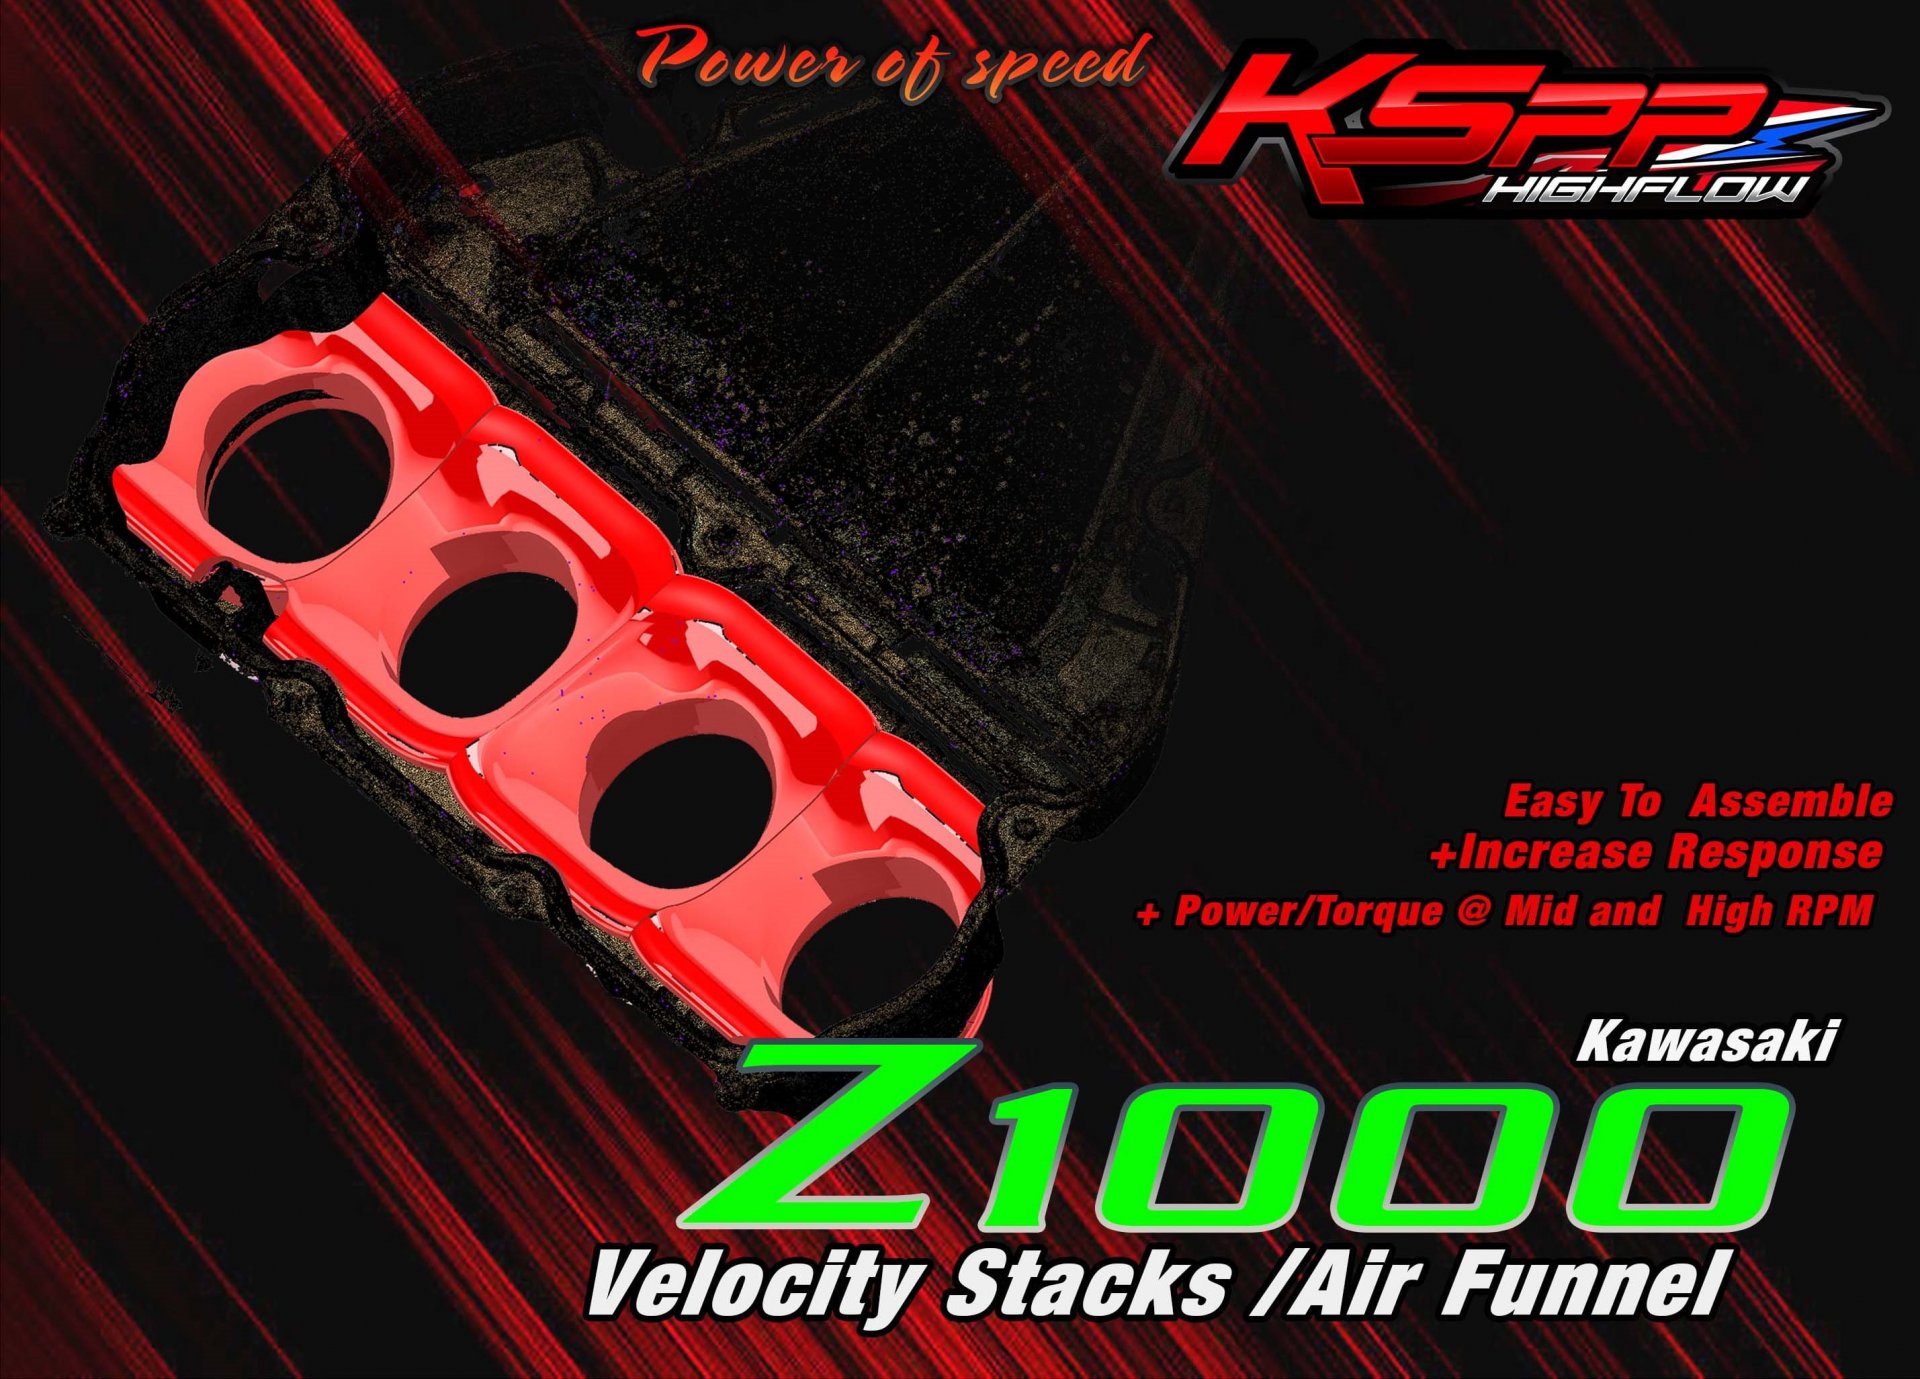 Kawasaki Z1000 KSPP High flow velocity stacks